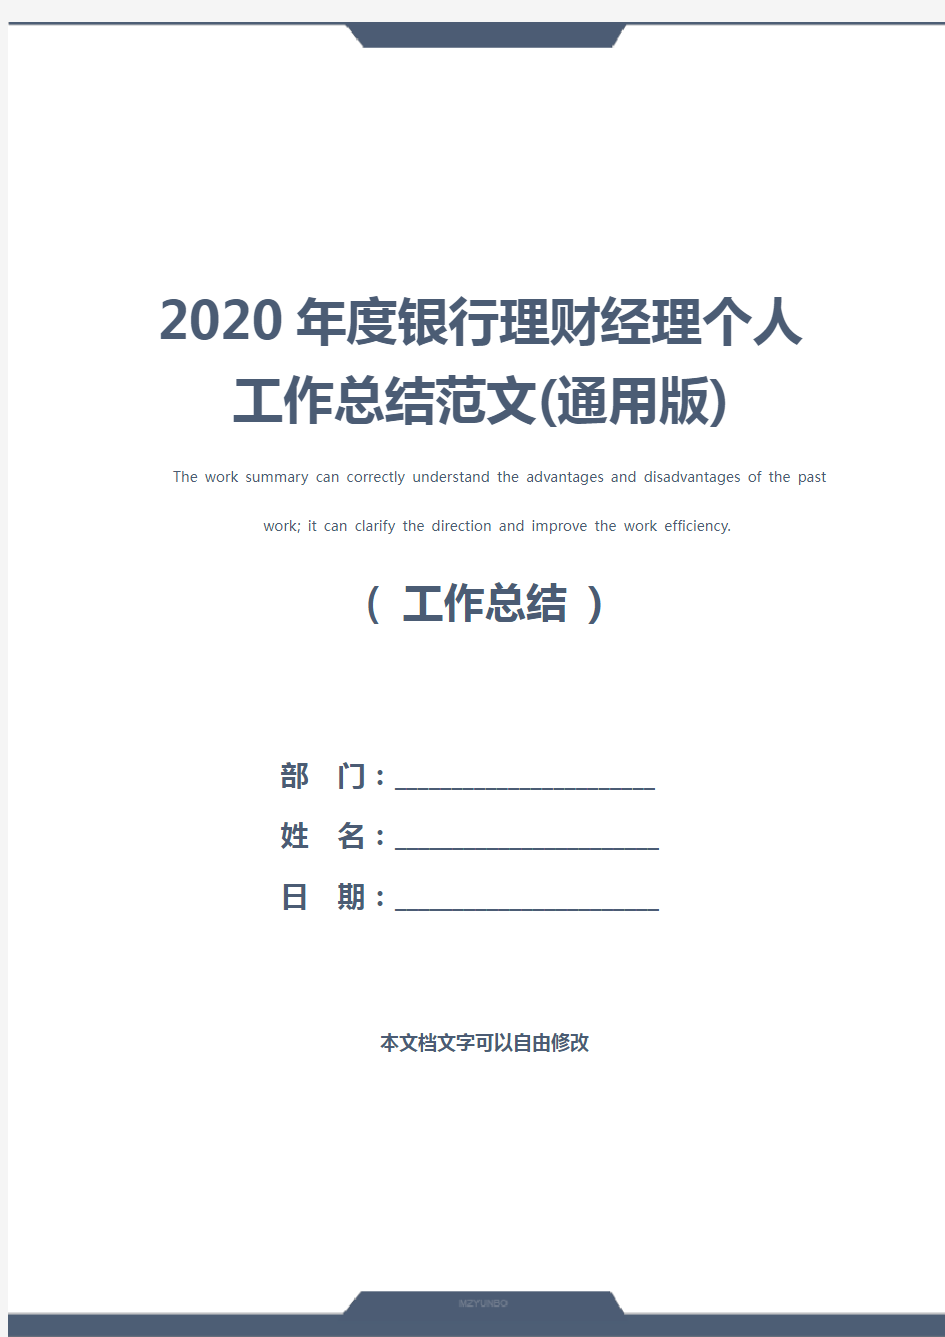 2020年度银行理财经理个人工作总结范文(通用版)